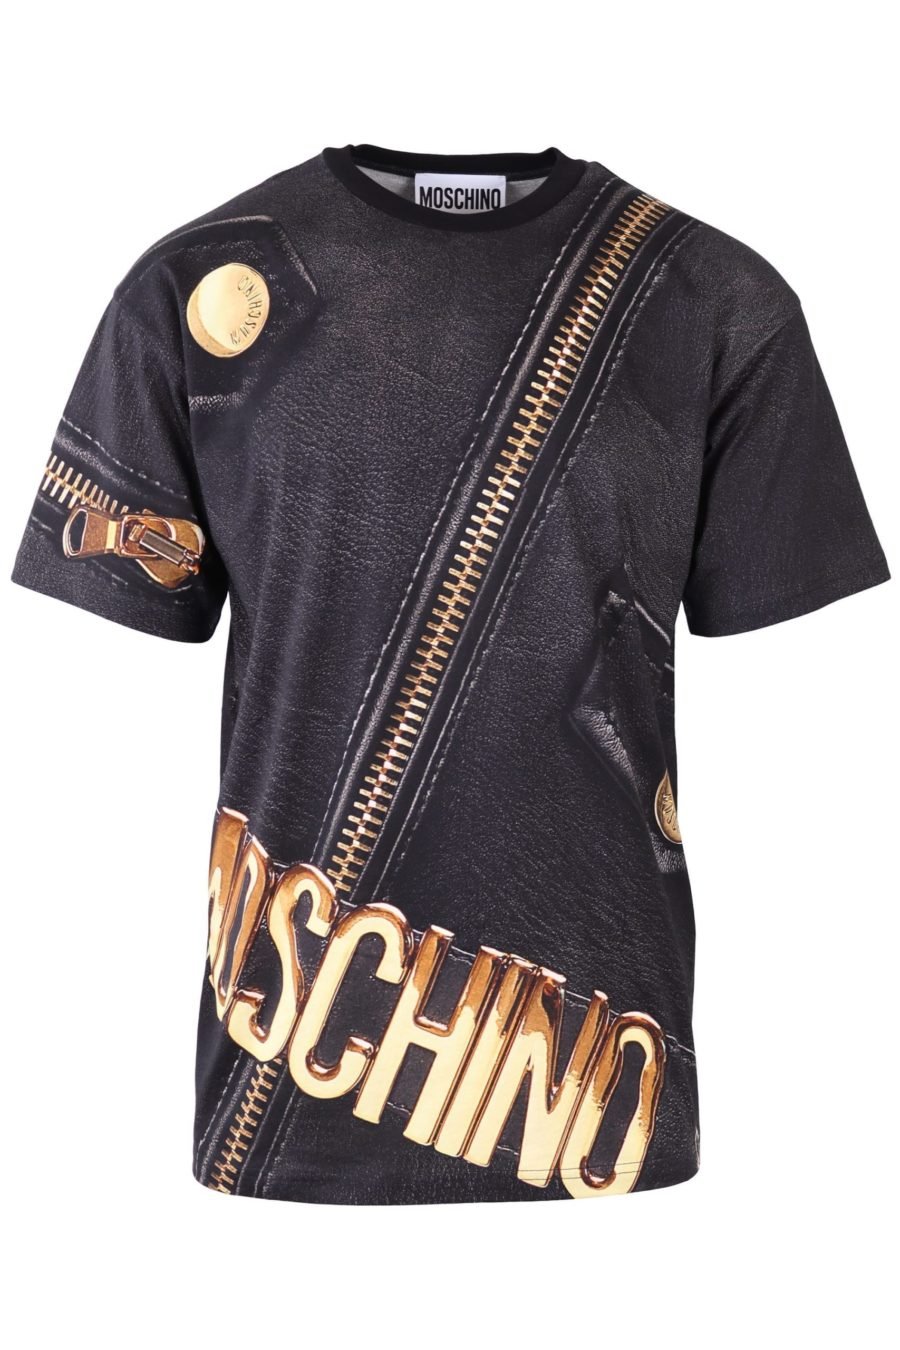 T-shirt Moschino Couture preta com fecho de correr dourado - IMG 6513 à escala